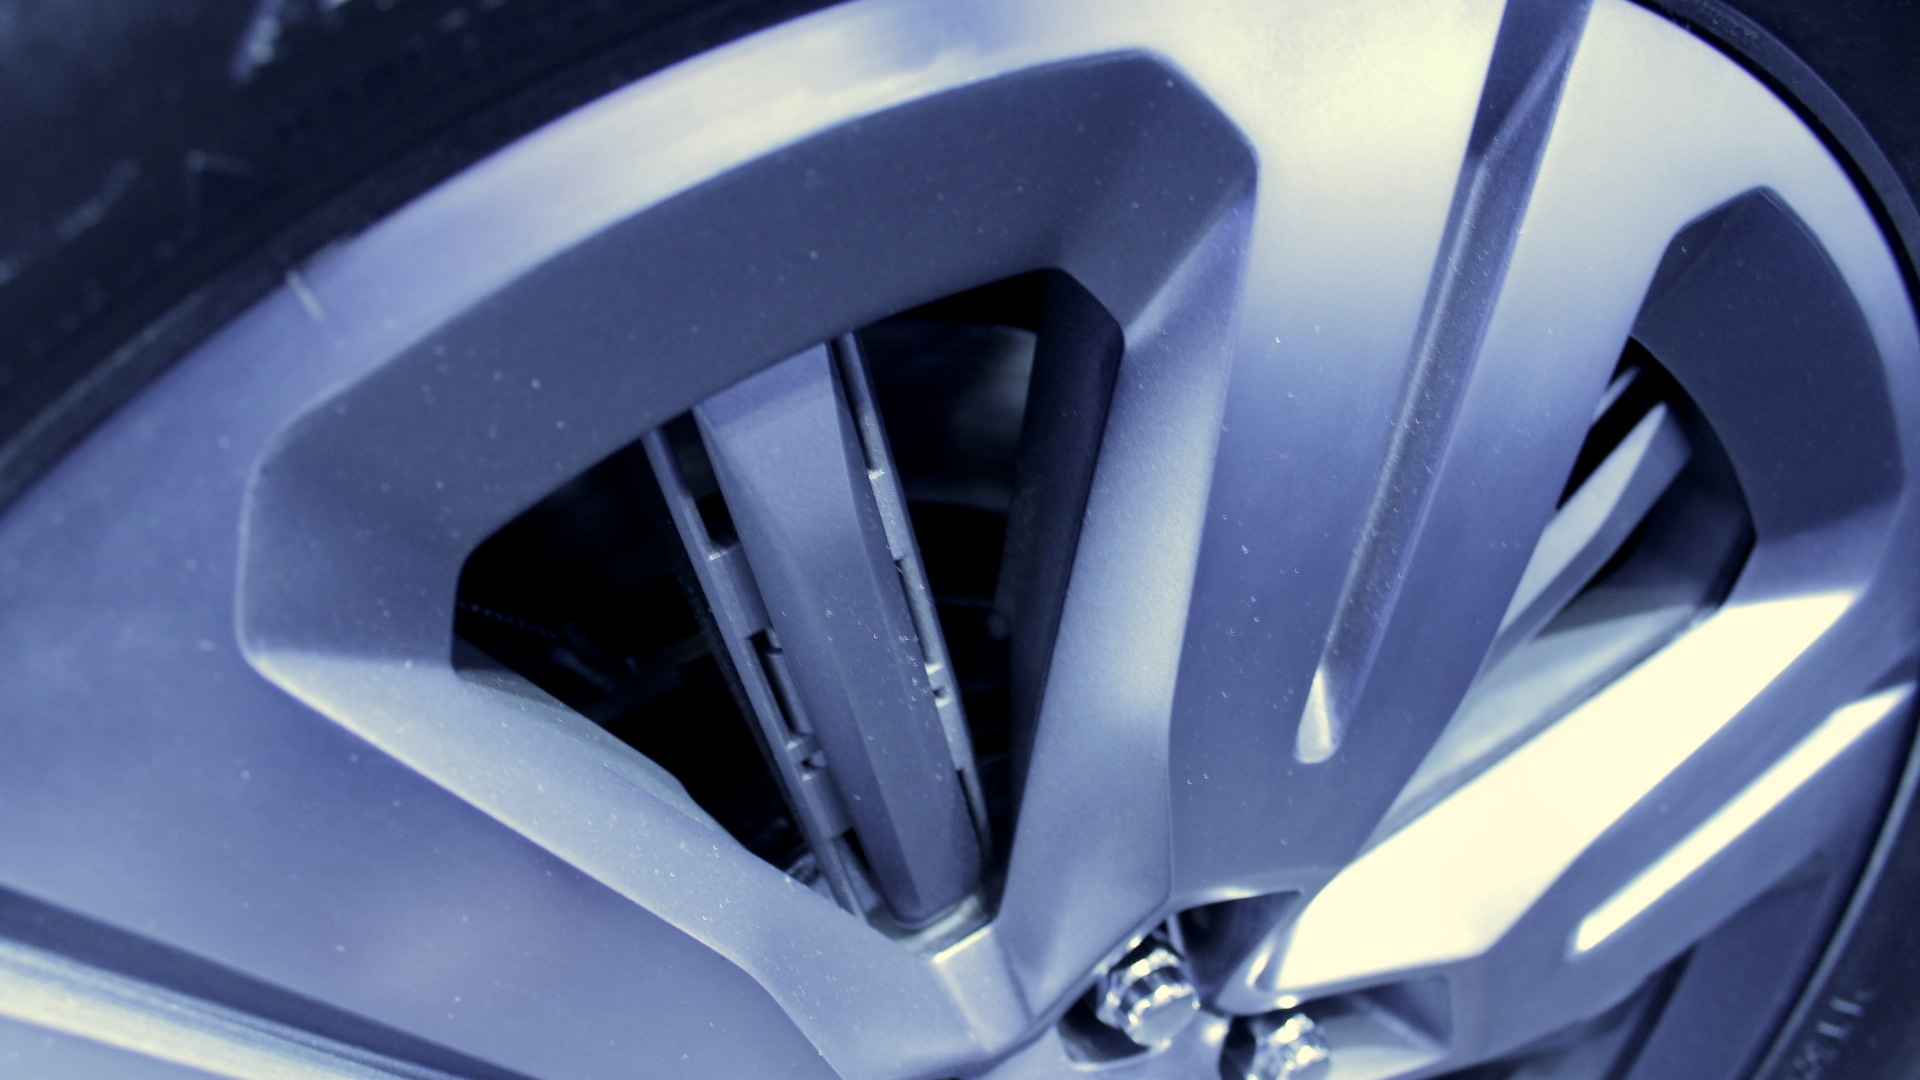 Active wheel shutters  -  Ford Atlas Concept  -  2013 Detroit Auto Show